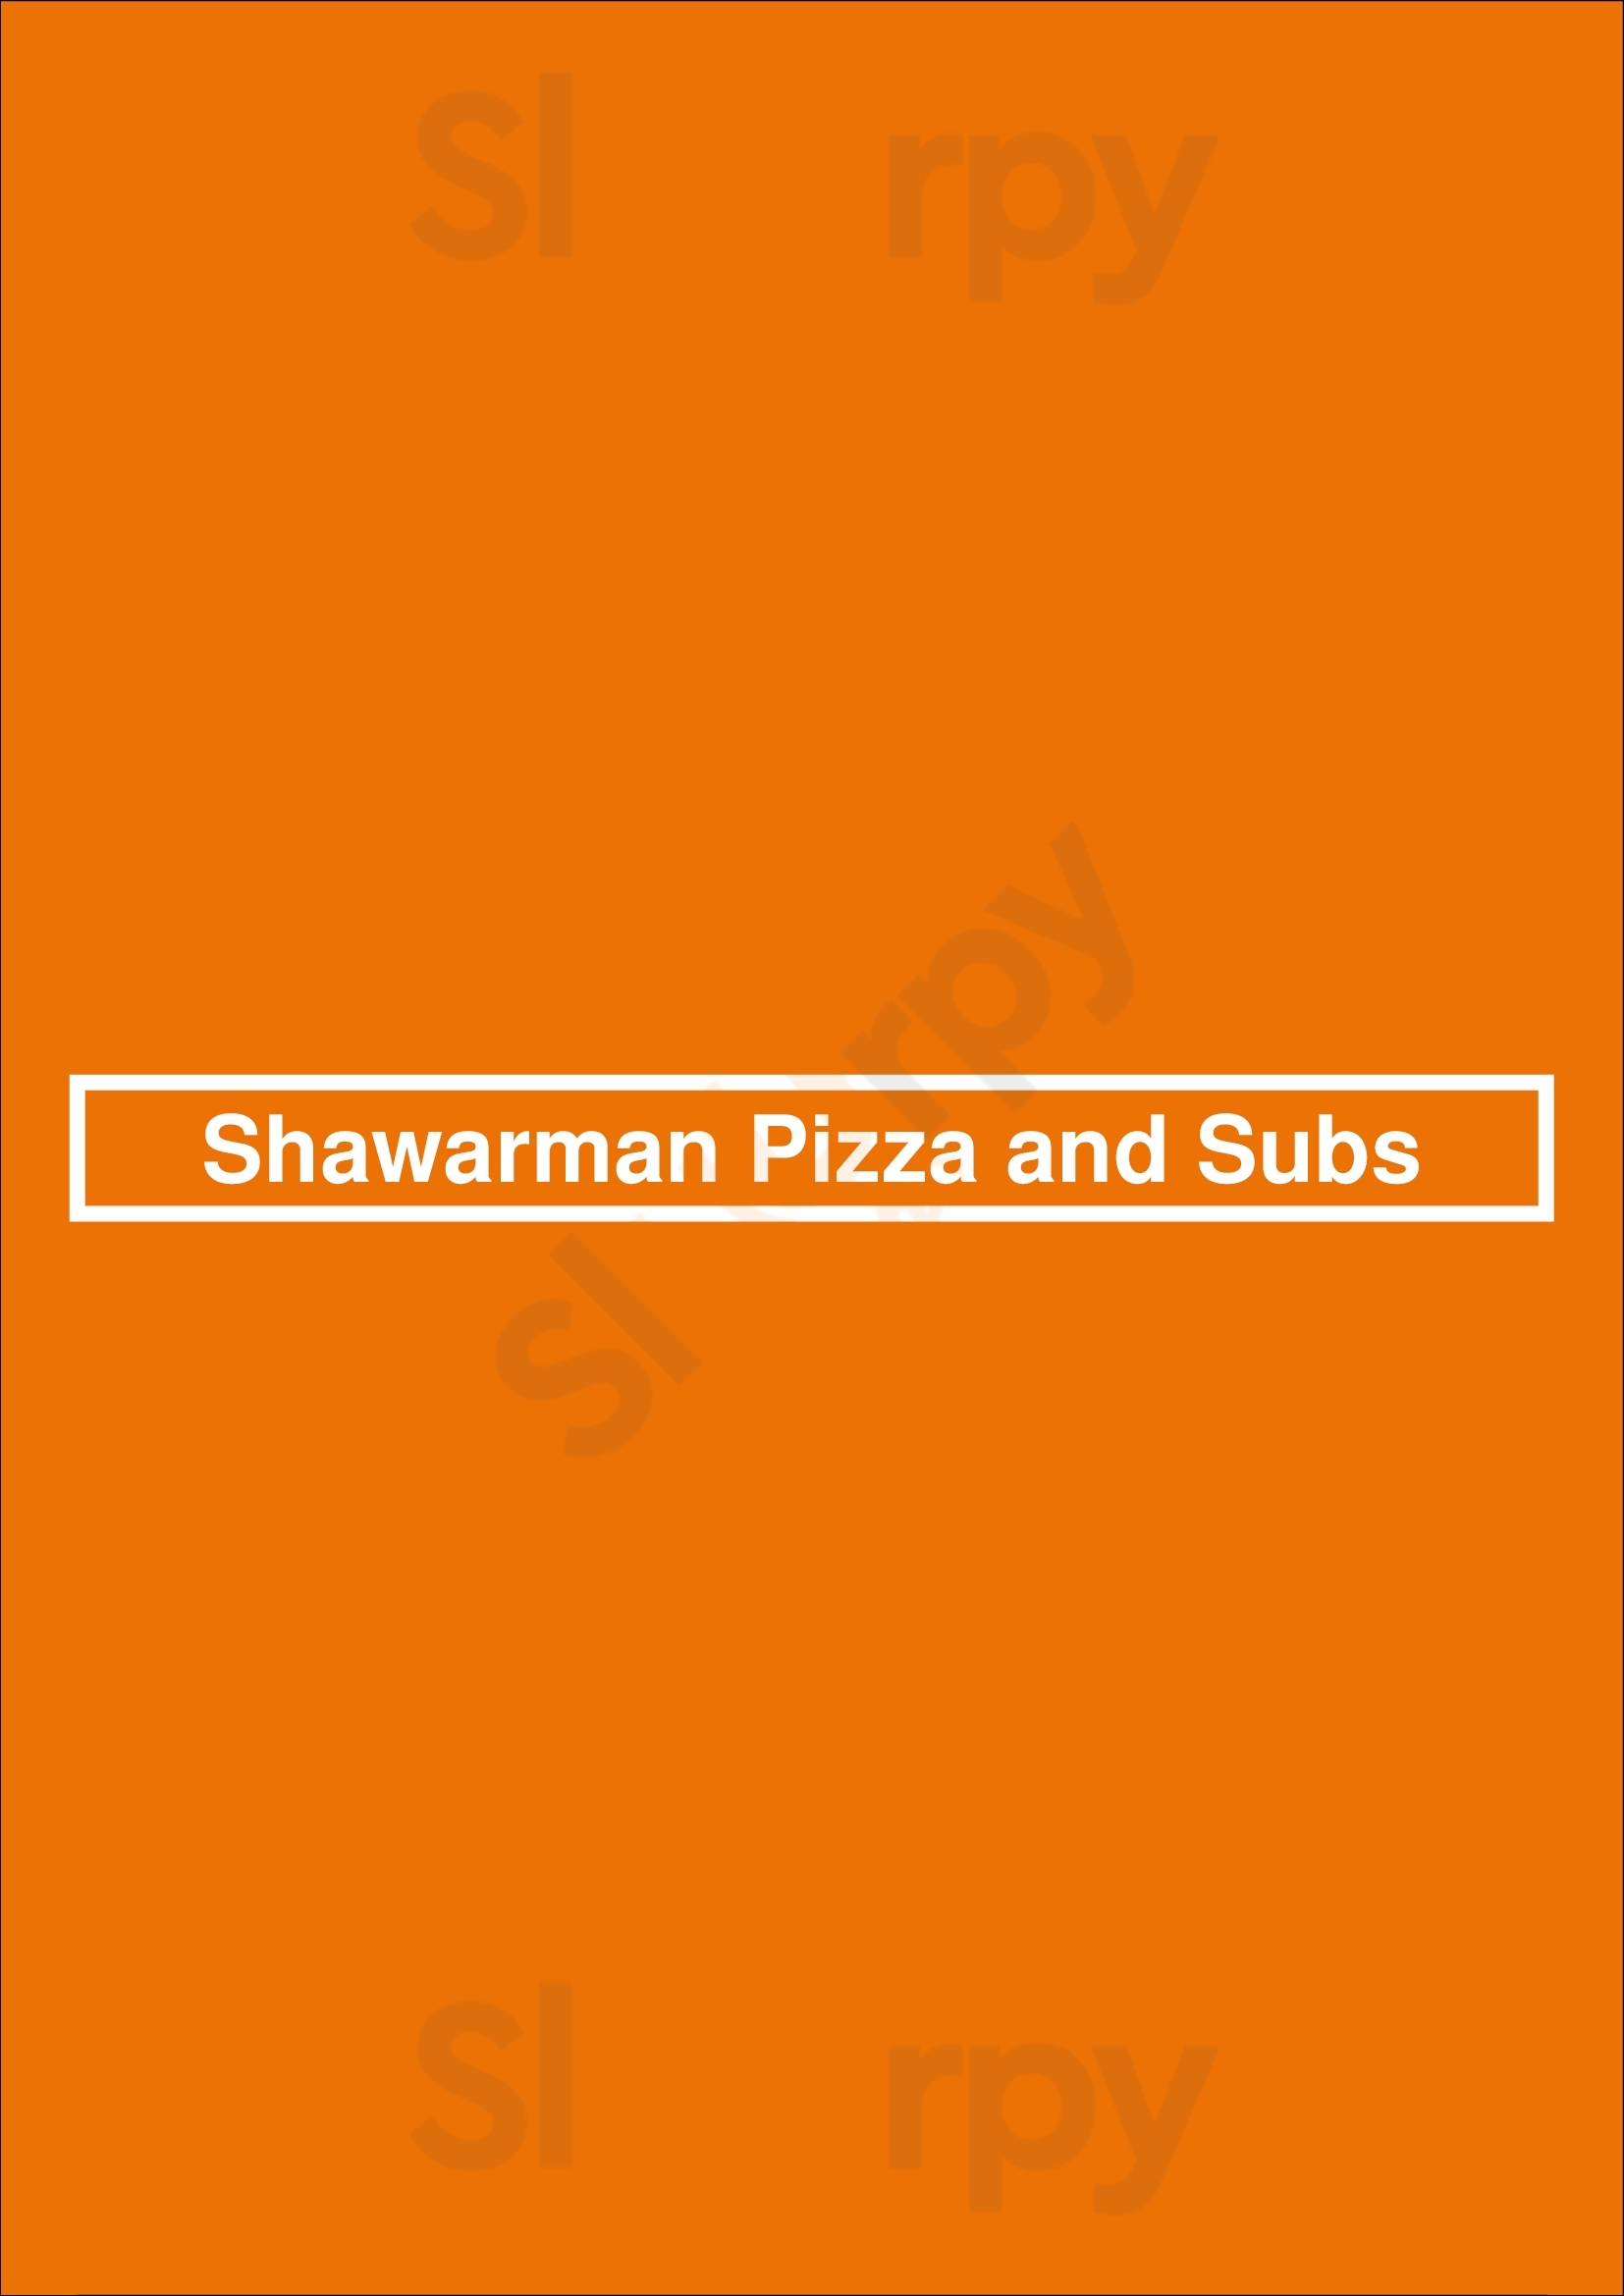 Shawarman Pizza And Subs Dartmouth Menu - 1